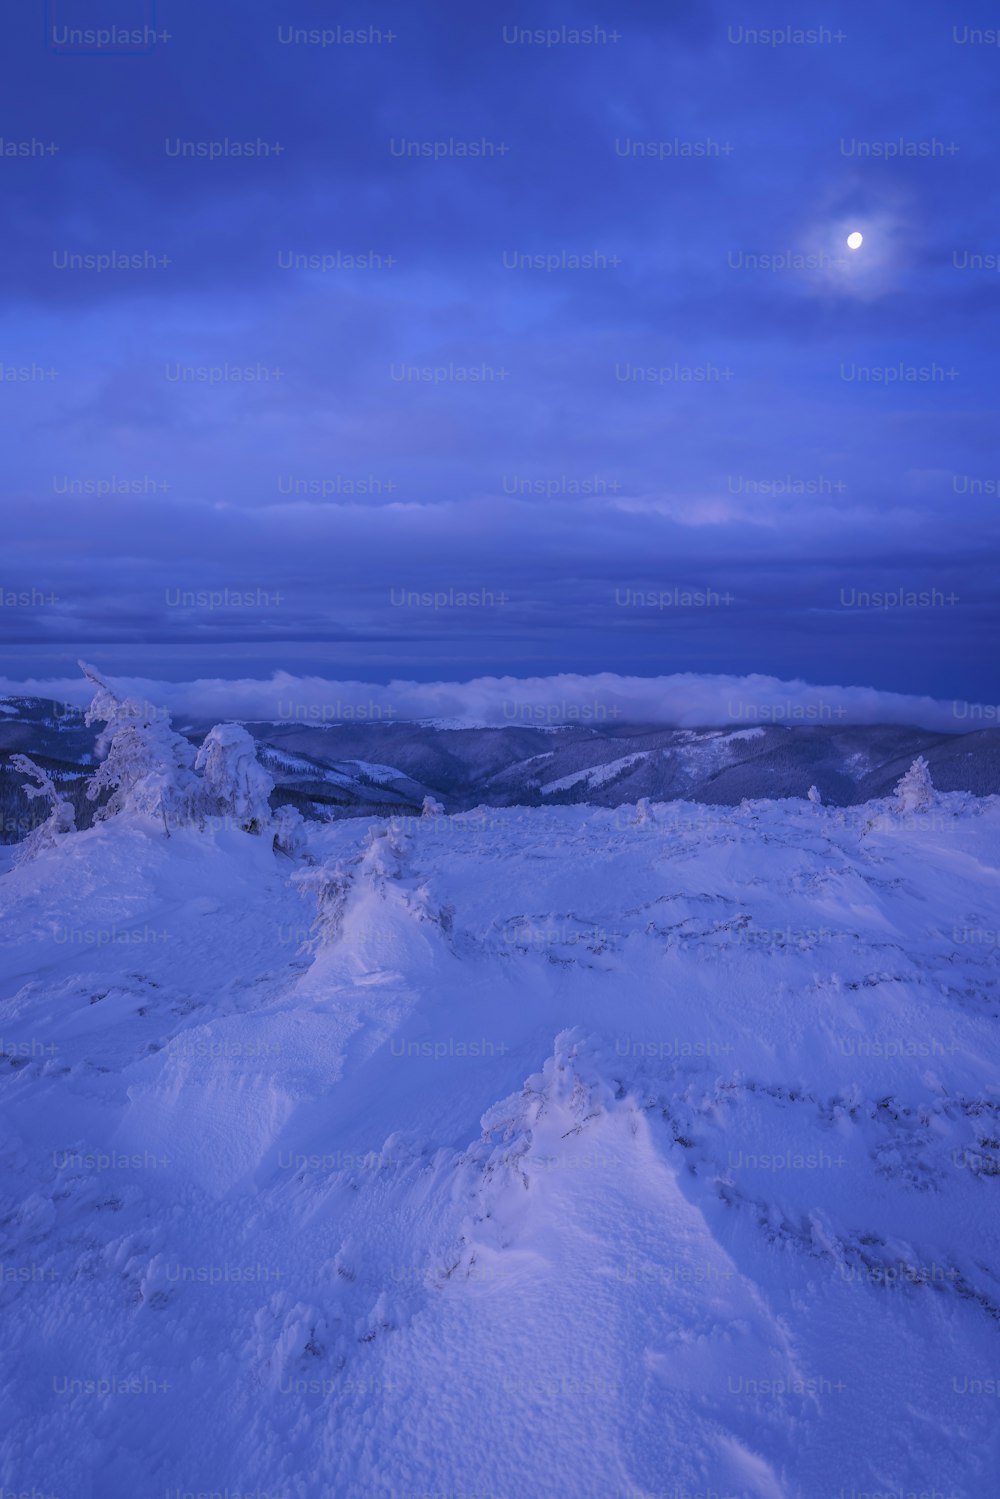 Ein schneebedeckter Berg unter einem bewölkt blauen Himmel